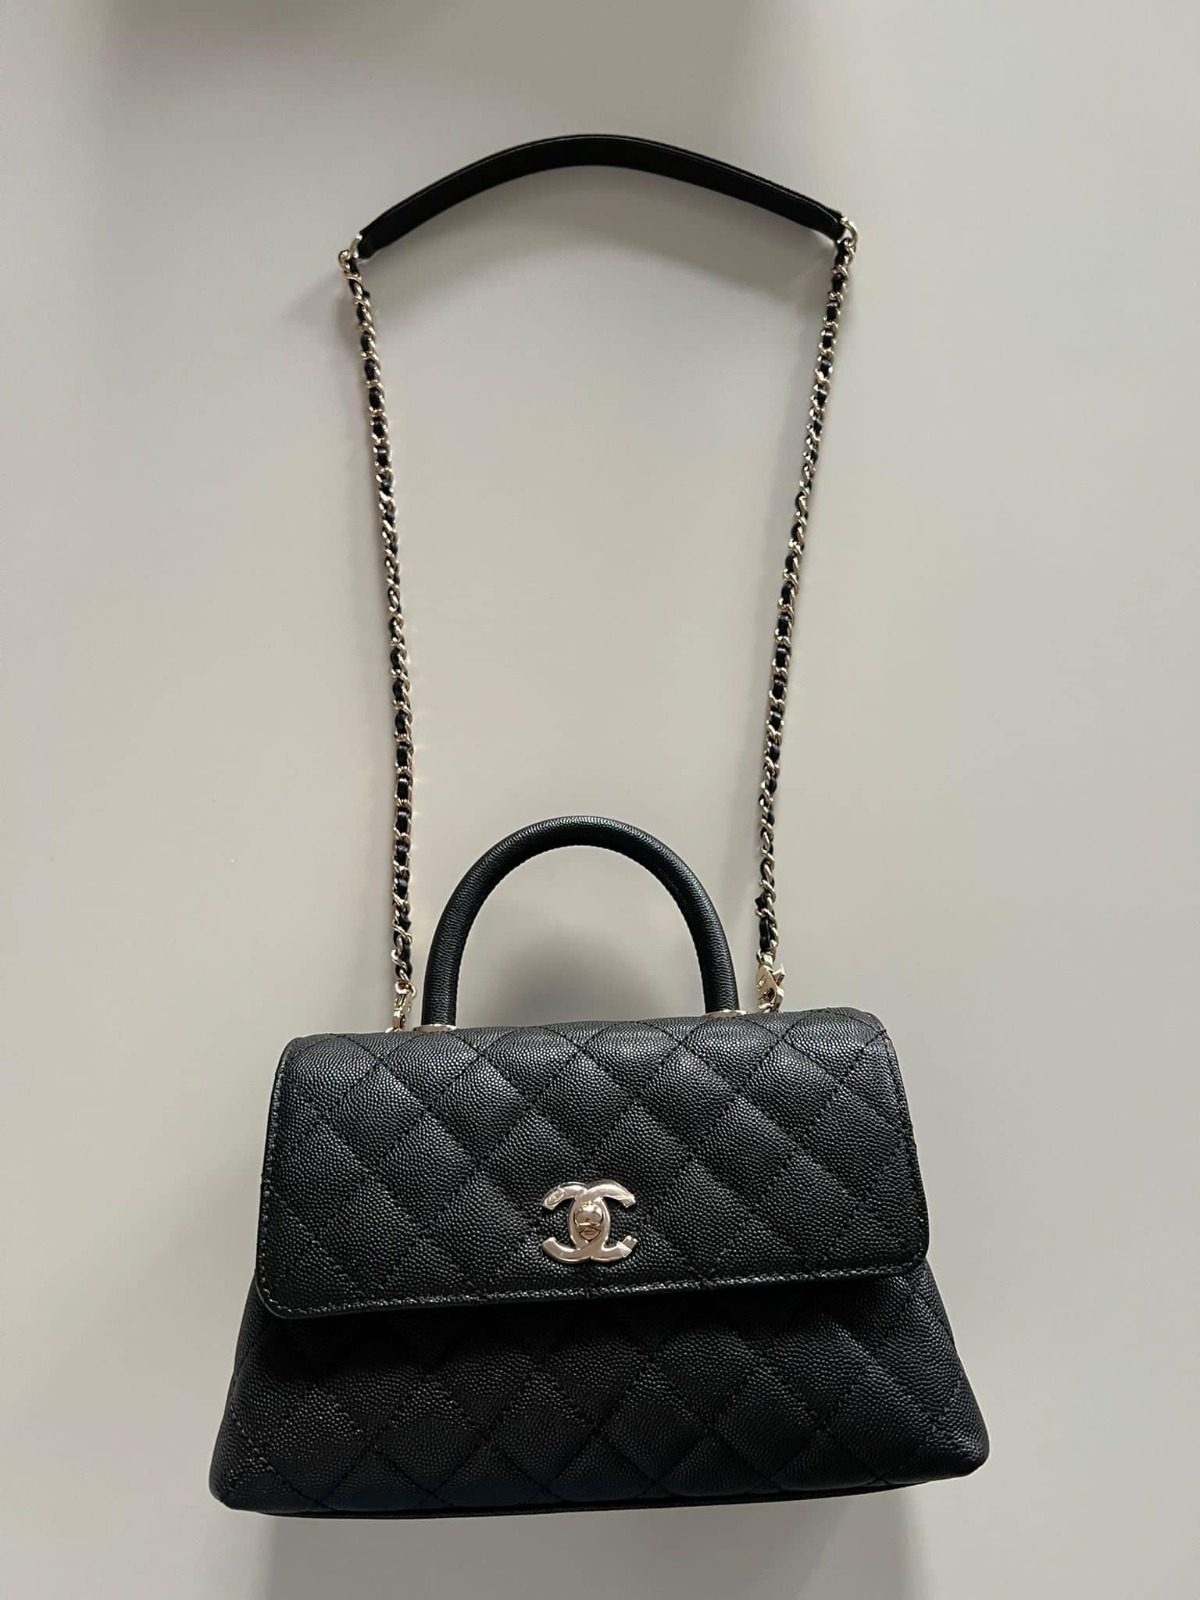 Chanel Coco Handle bag